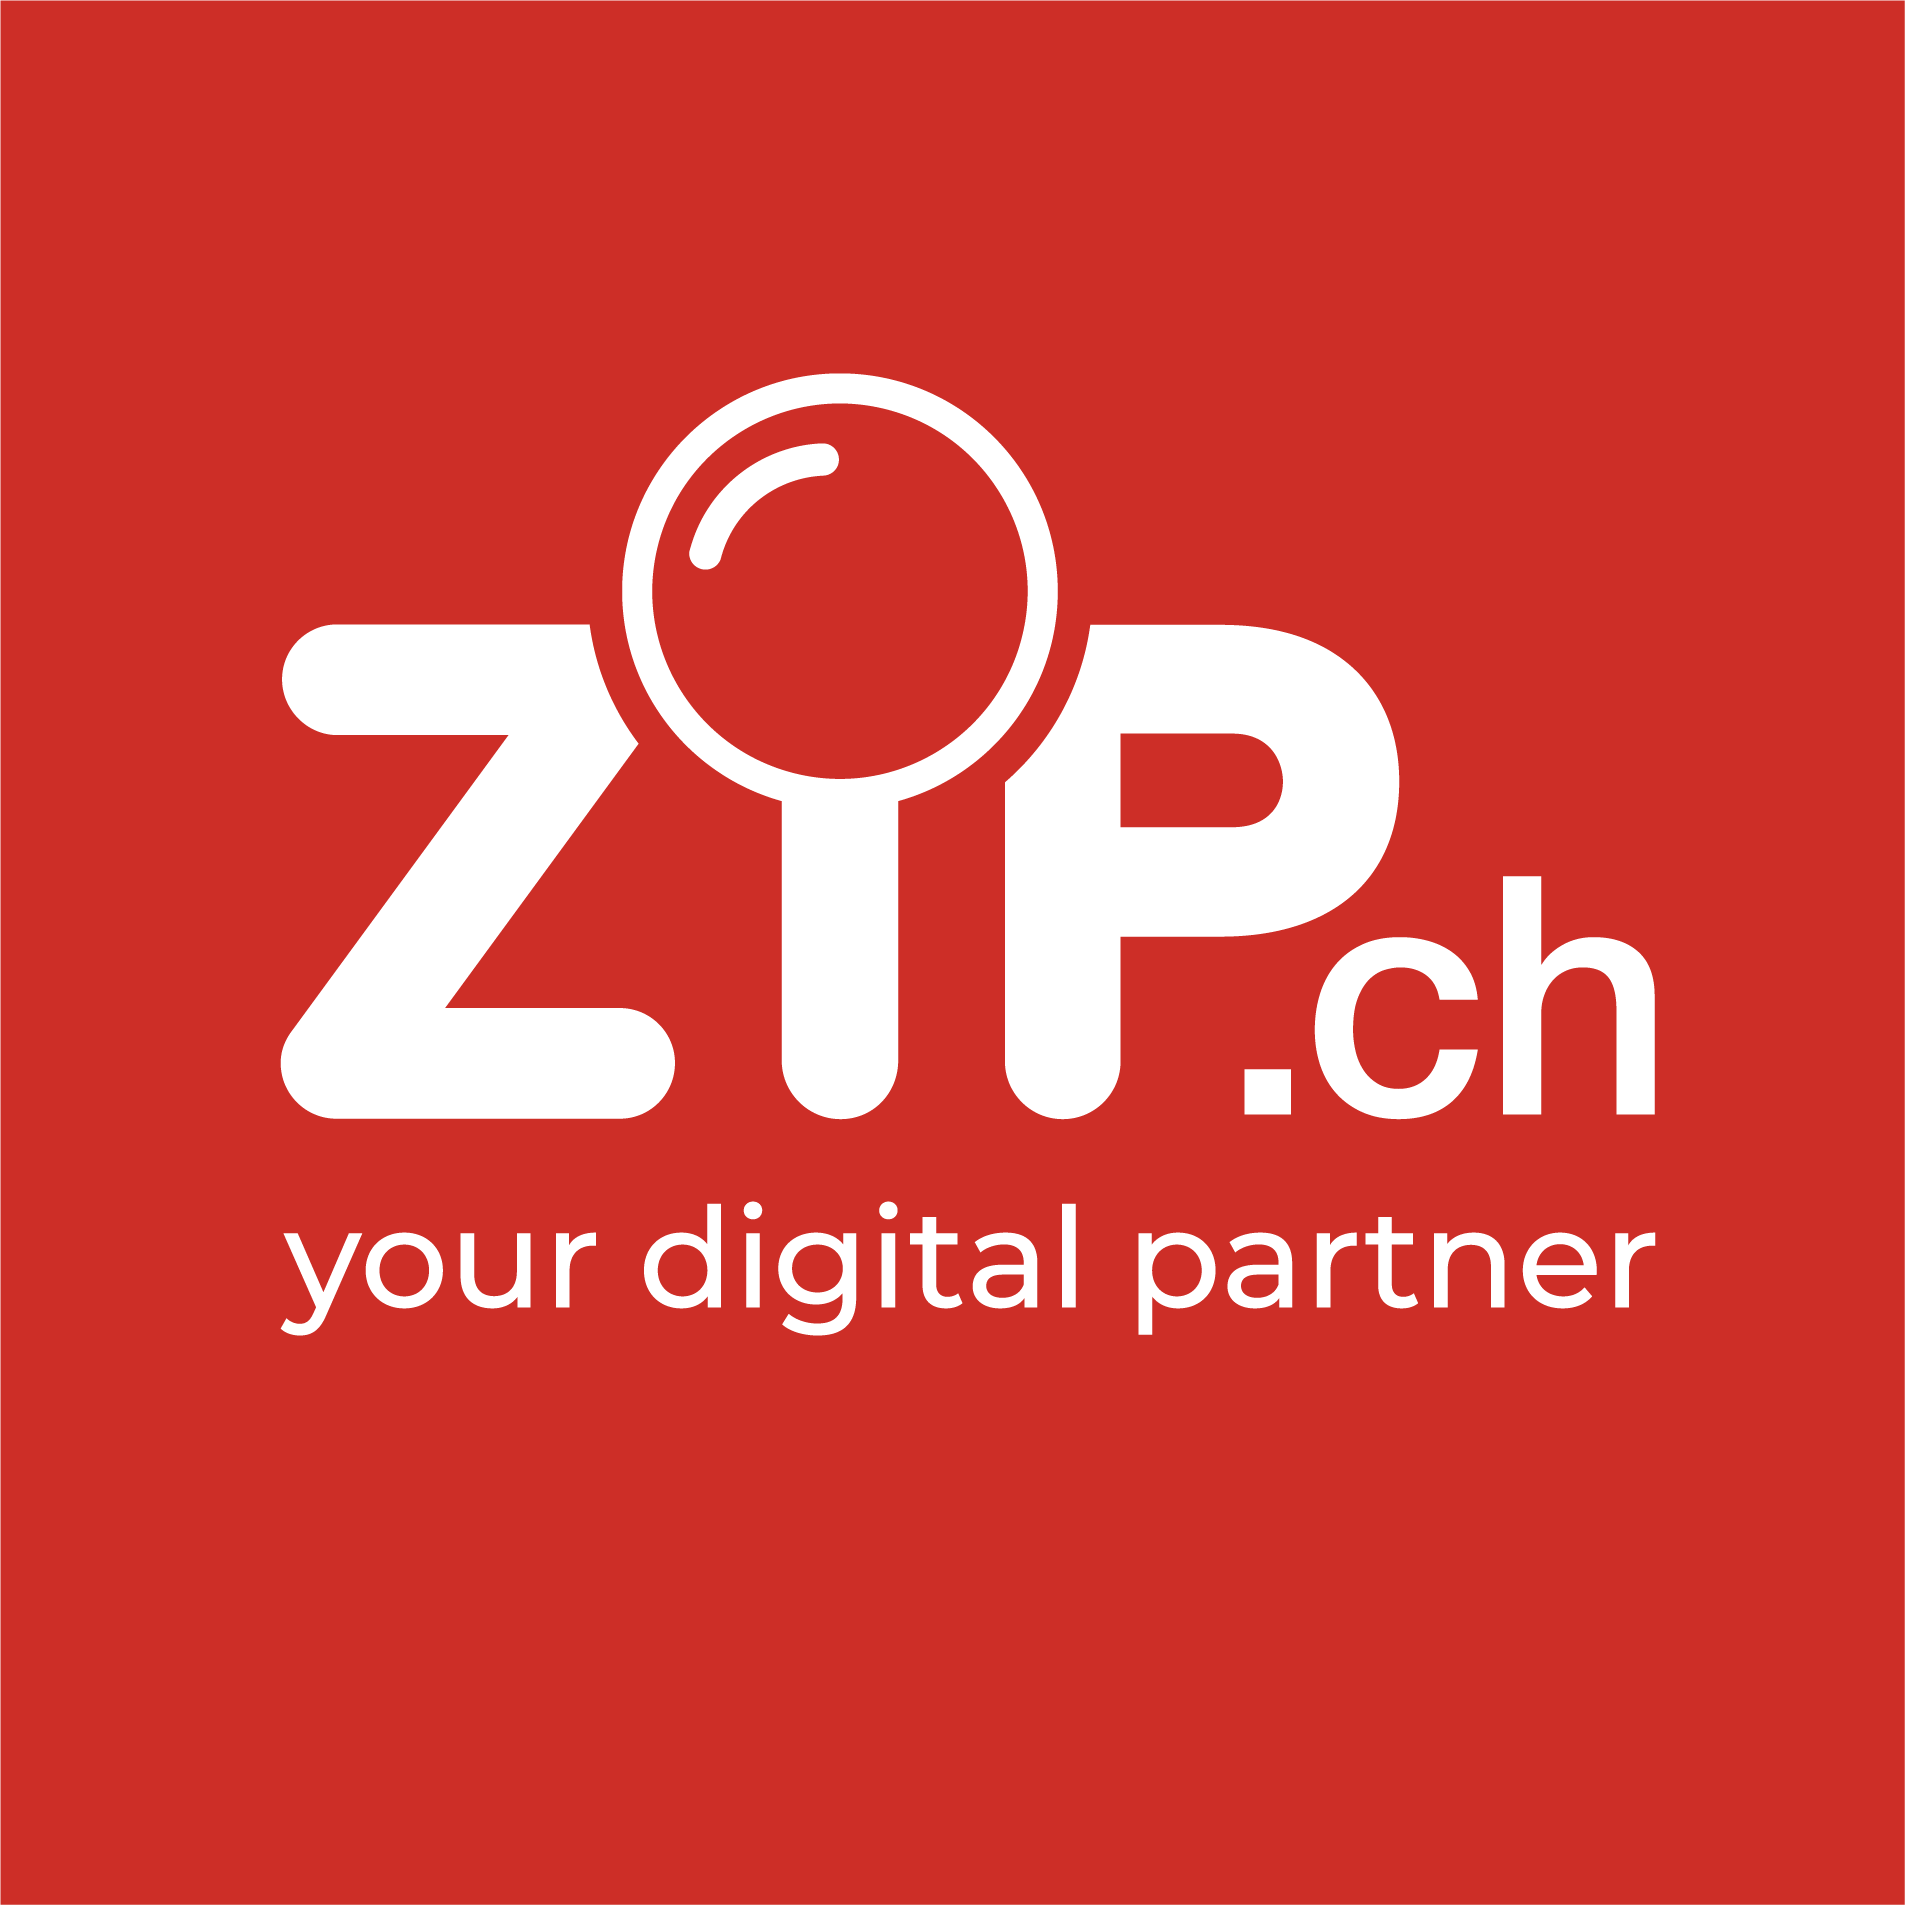 ZIP.ch - your digital partner